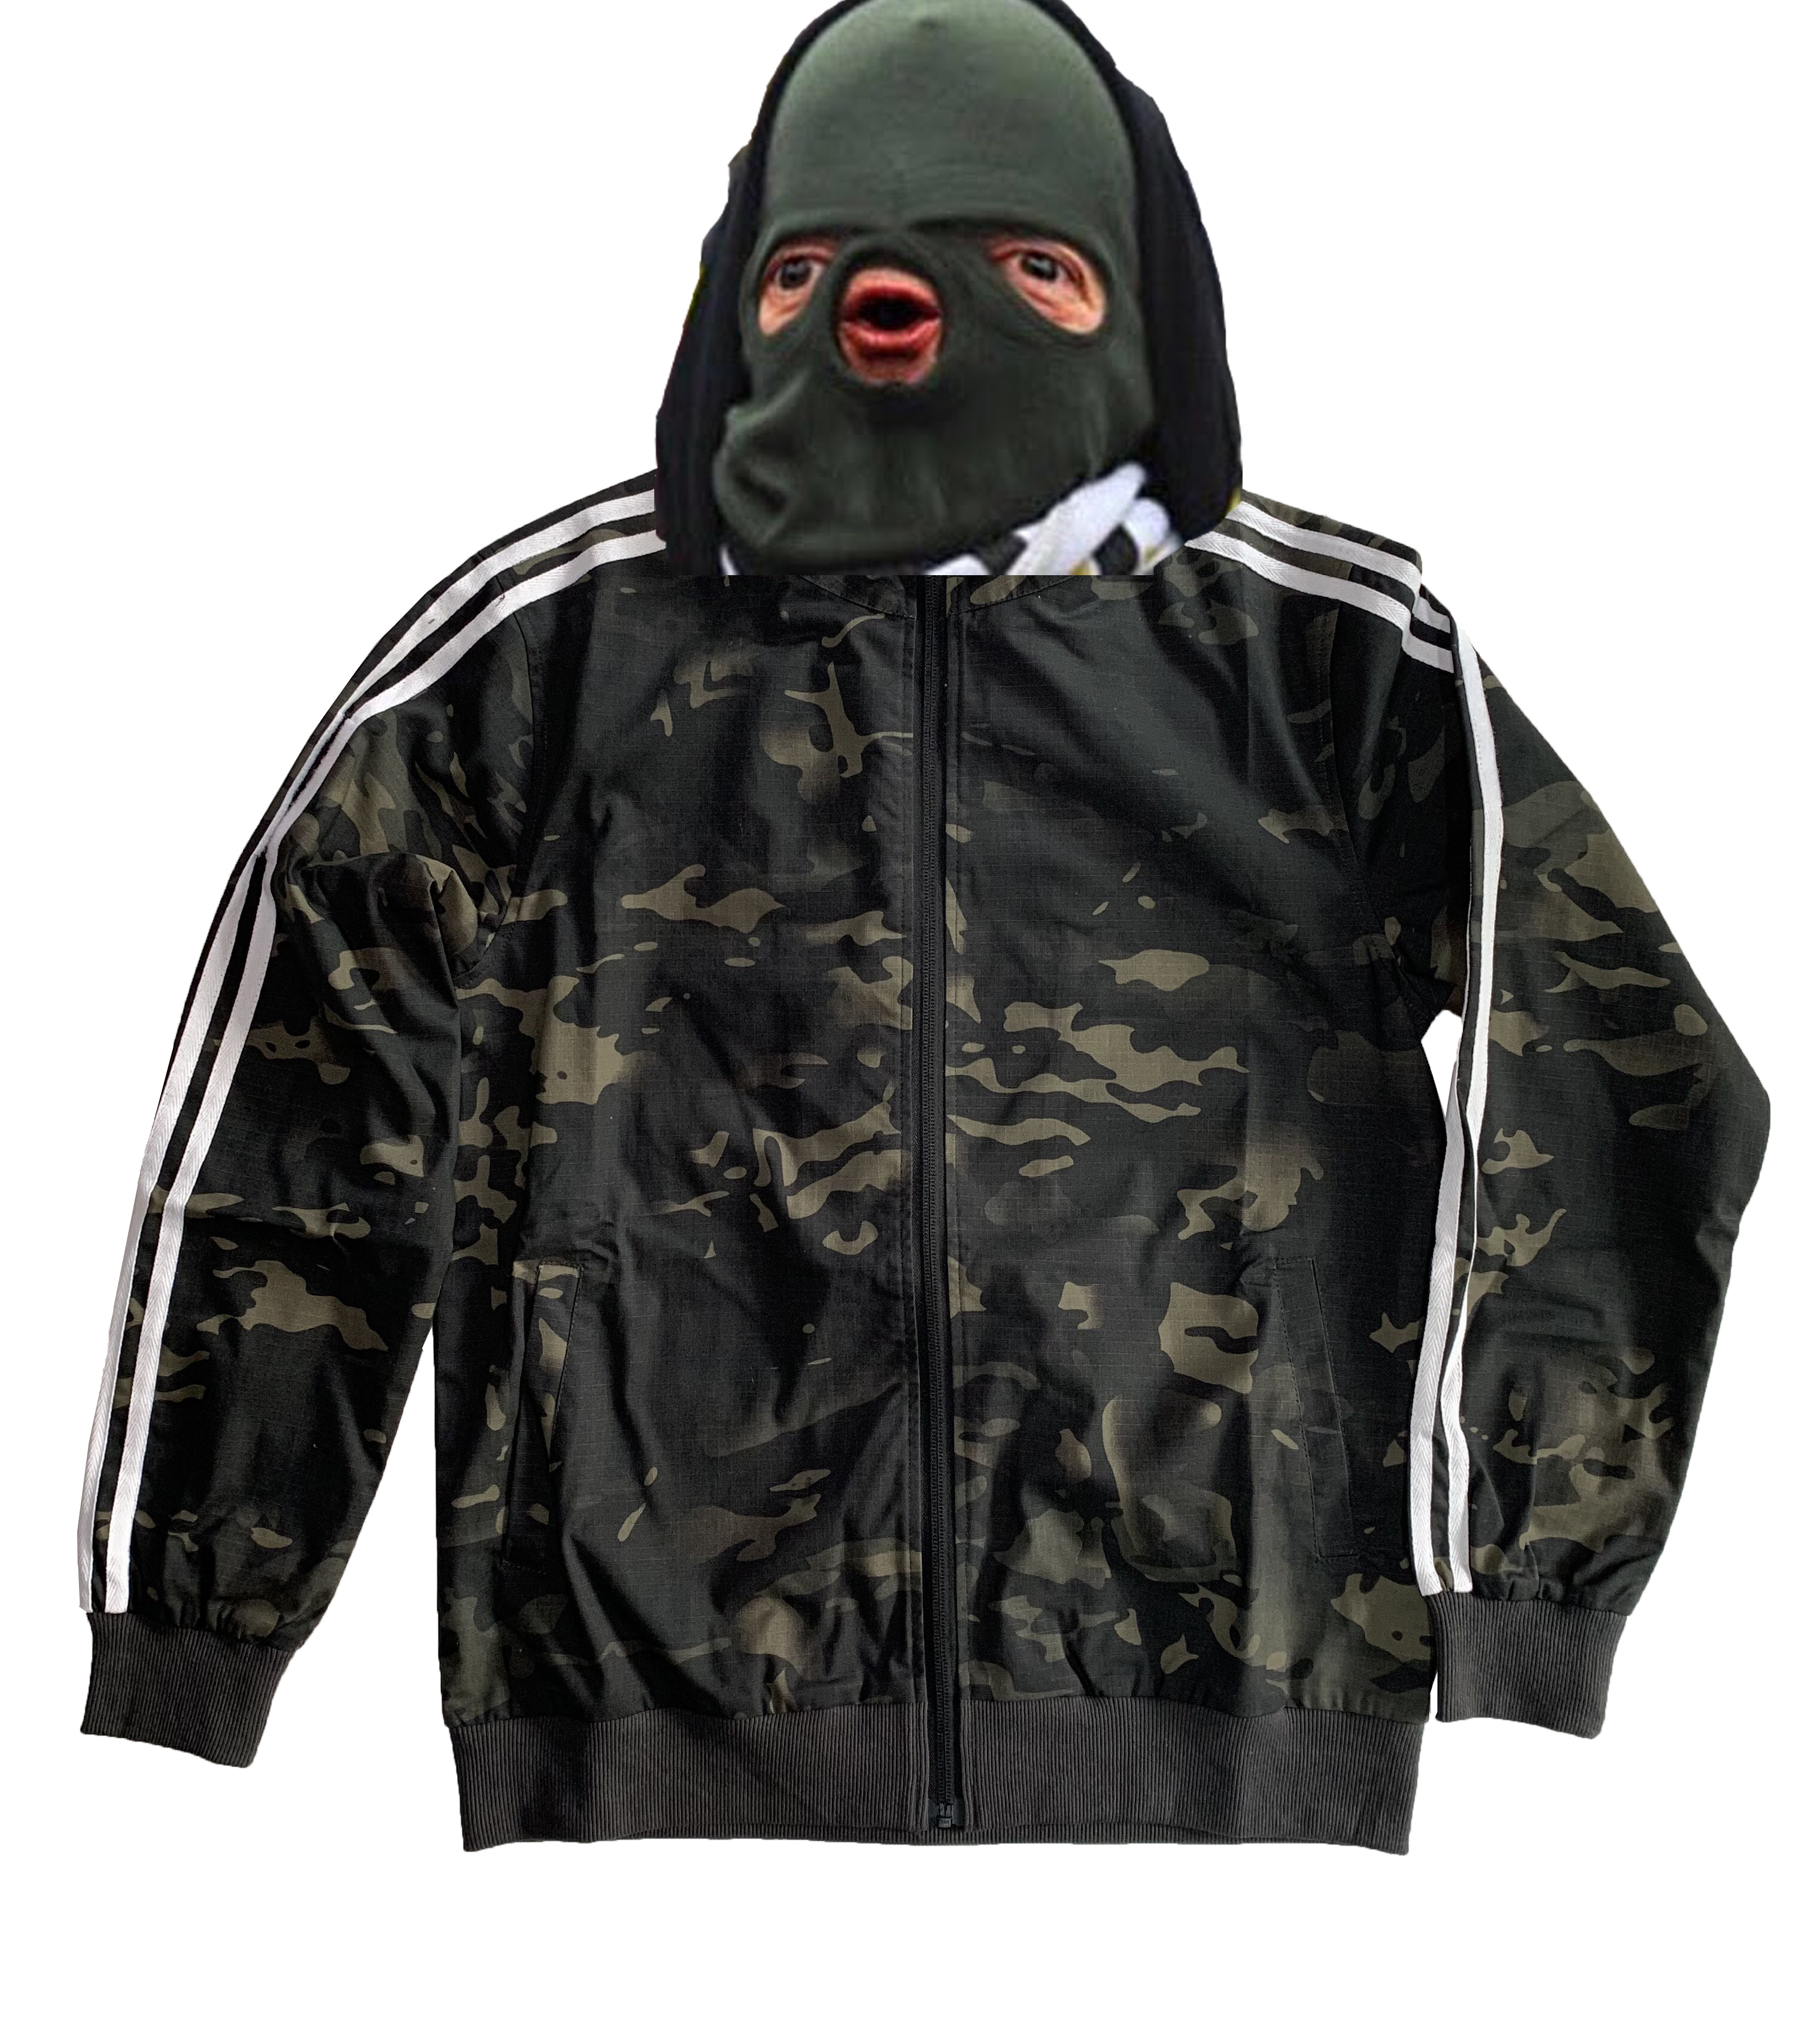 Gopnik - Squatting Slav Black Multicam Track Suit (Jacket And Pants)